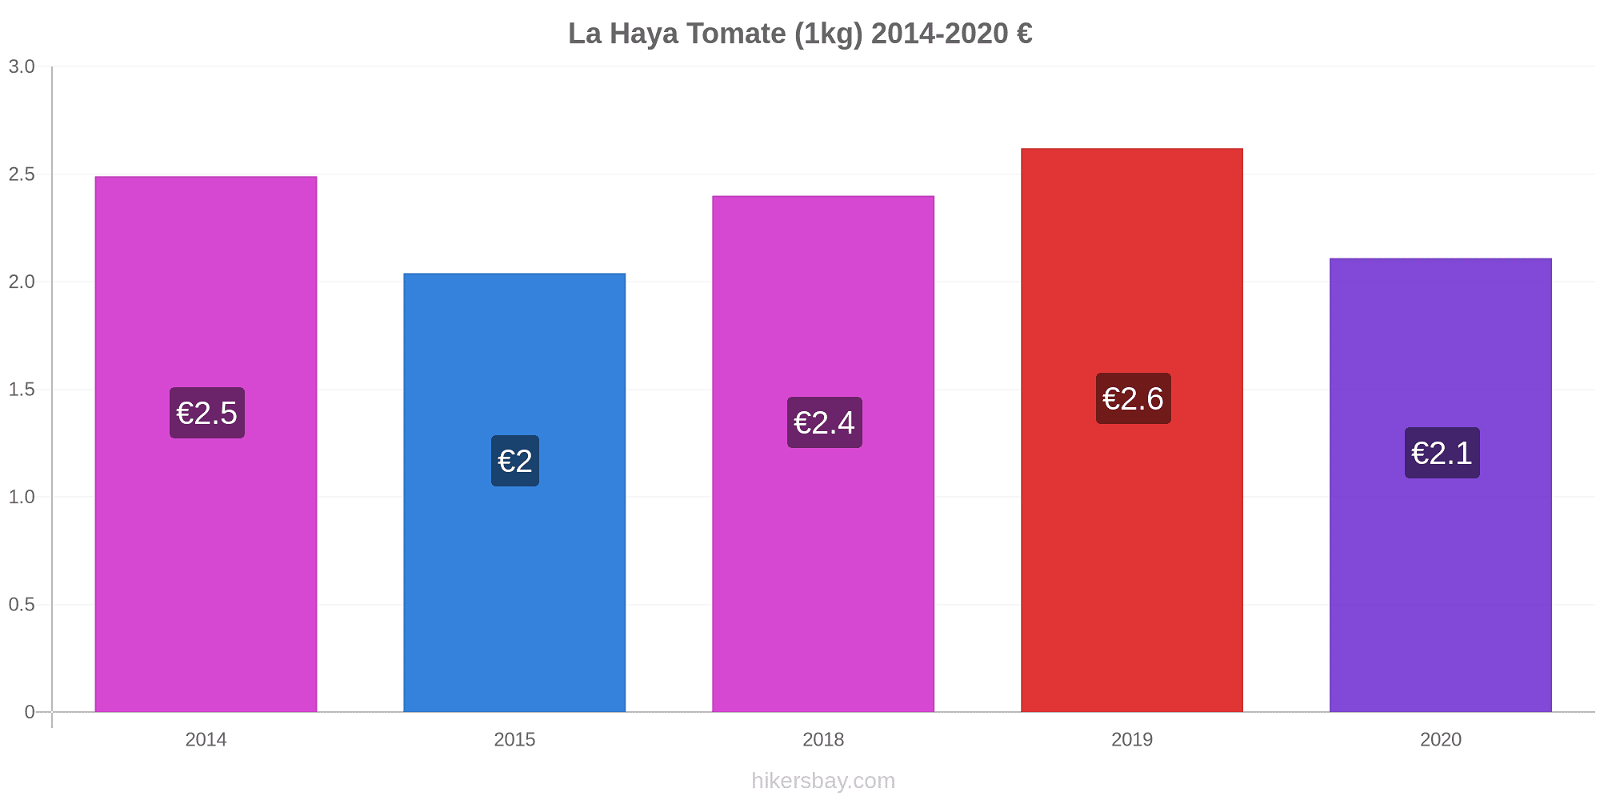 La Haya cambios de precios Tomate (1kg) hikersbay.com